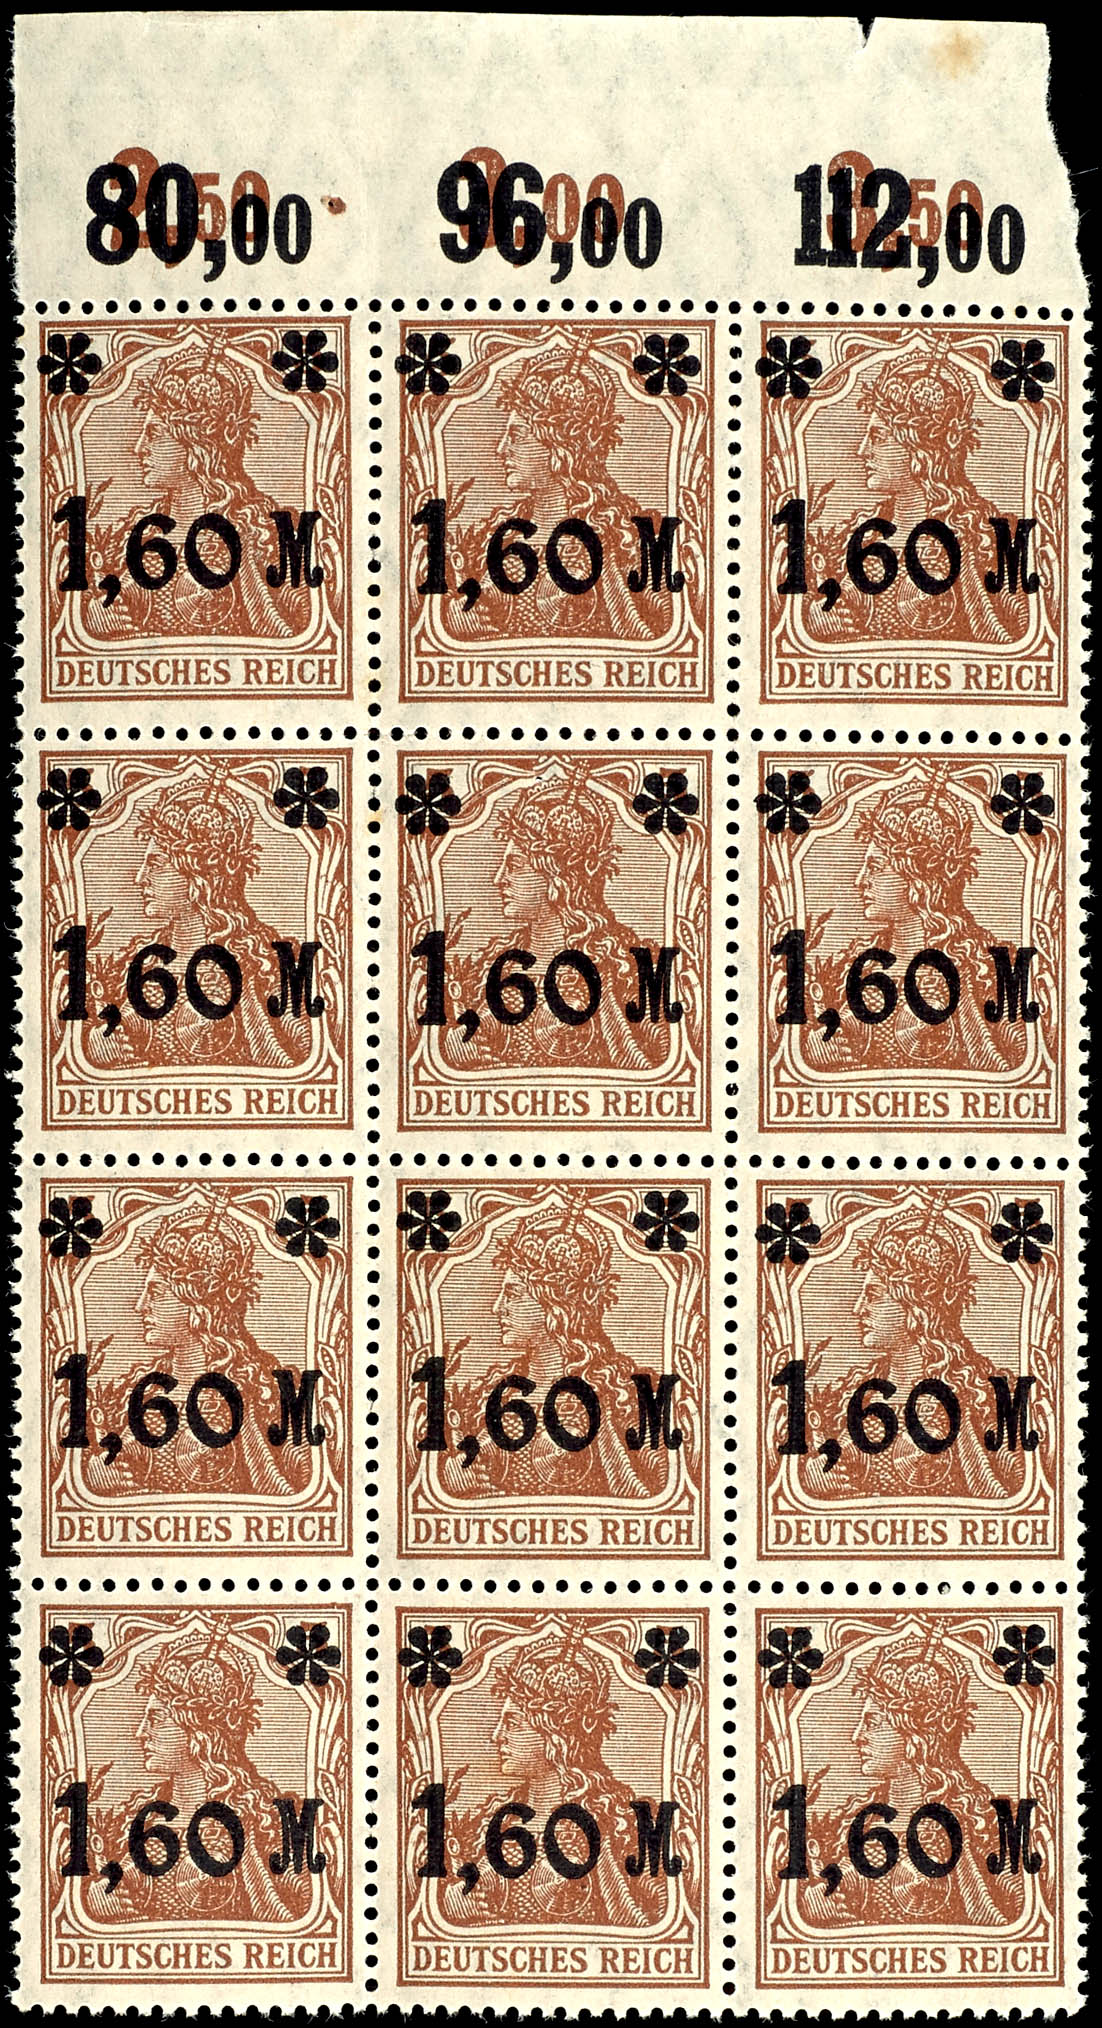 Auction 170 | Lot 1906